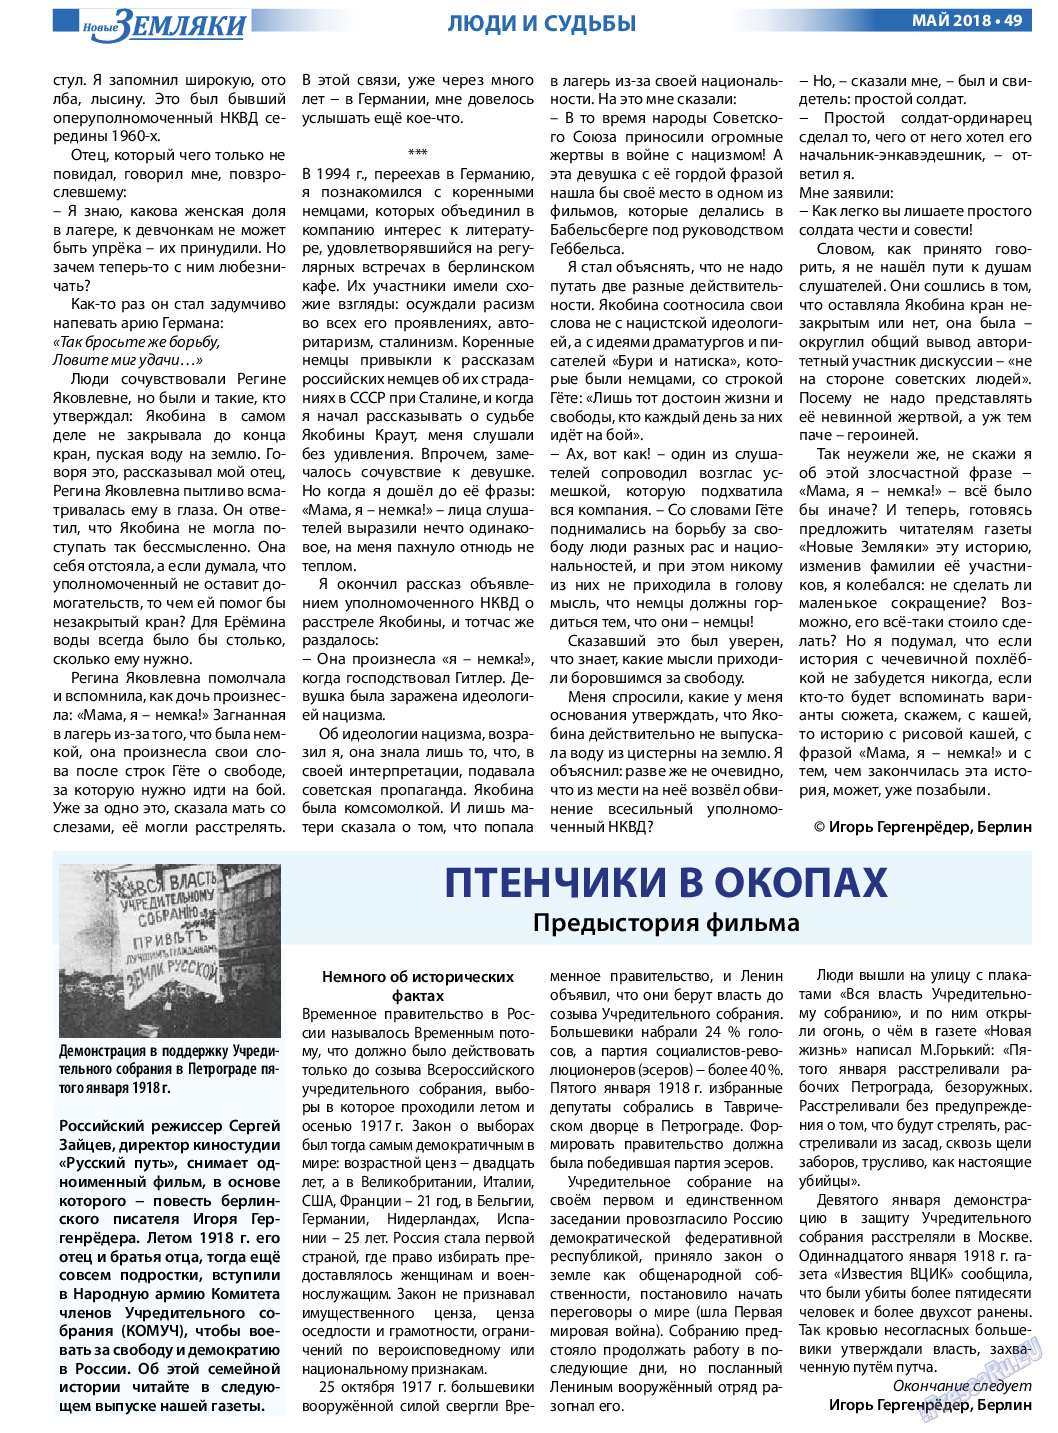 Новые Земляки, газета. 2018 №5 стр.49